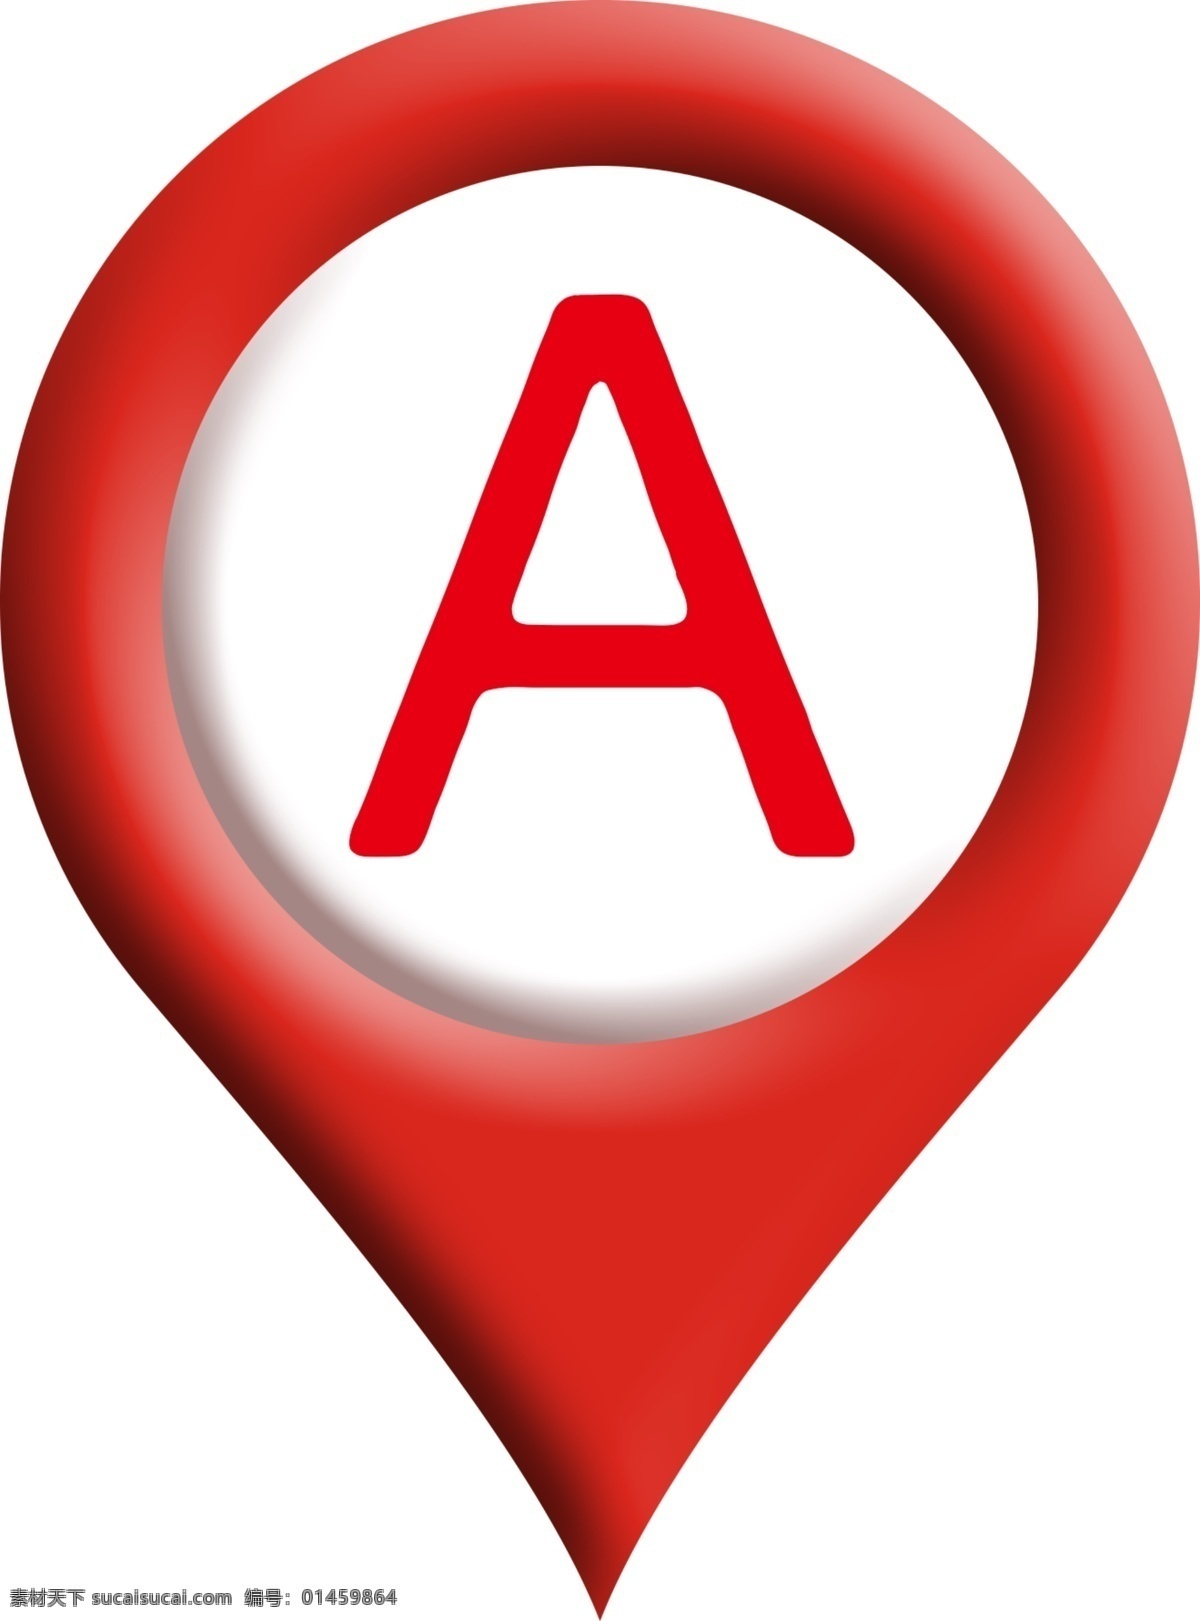 平面图 上 提示 标 地标 地图 标志 图标 细小 显示 简单 红点 字母 a 白色 红色 立体 ps 质感 凹凸 细滑 立体图 简单素材 标志图标 其他图标